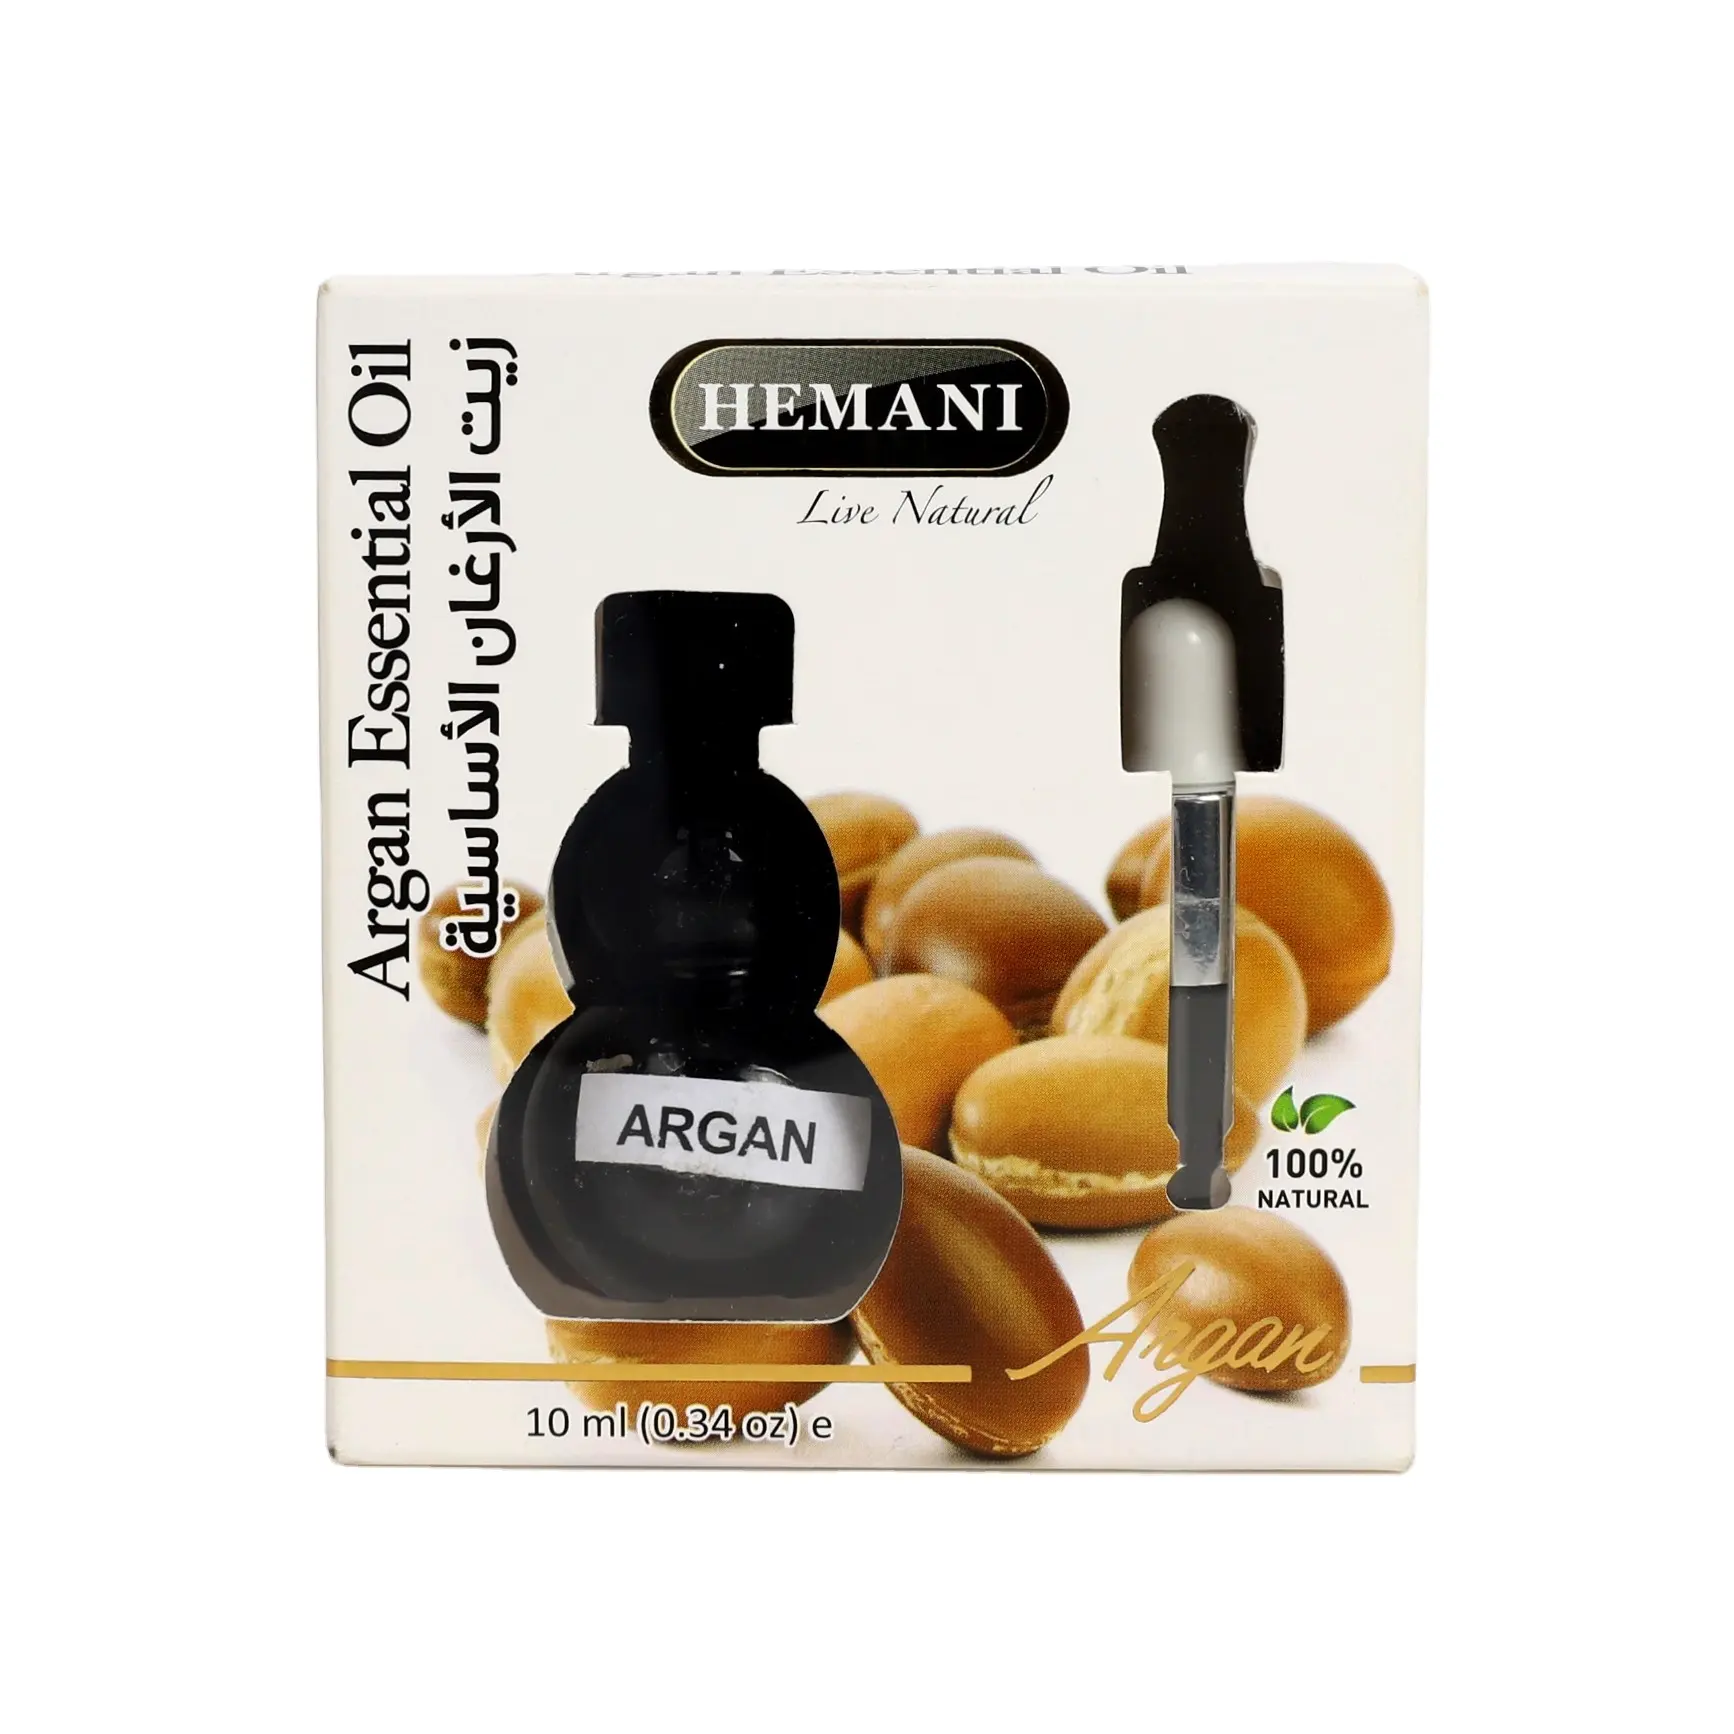 Высококонцентрированное 100% натуральное эфирное масло Hemani, 10 мл, флакон-капельница для ухода за кожей тела, косметический массаж